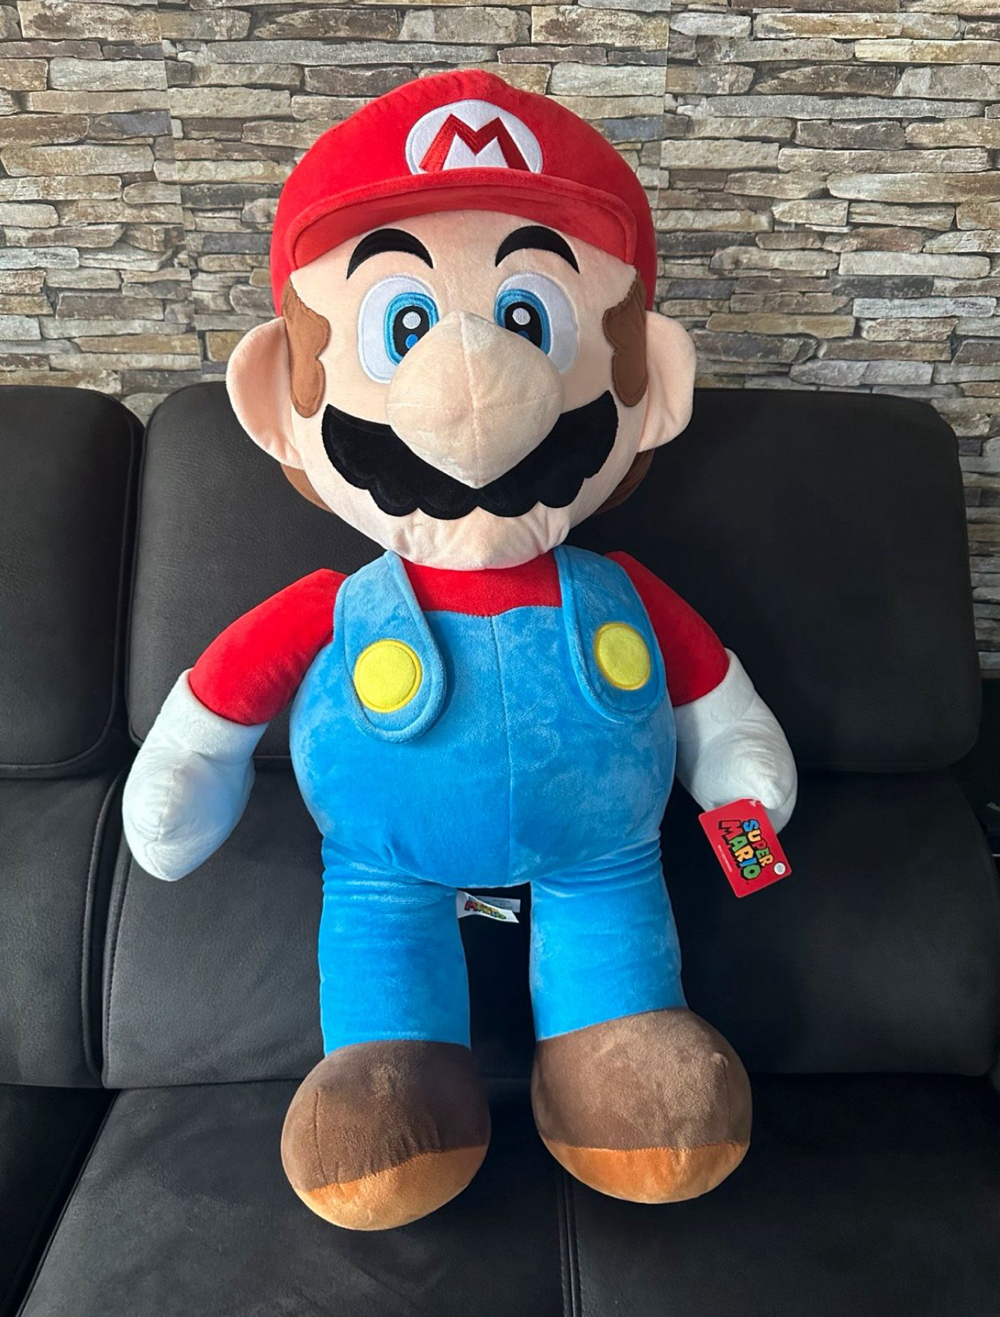  Mario 